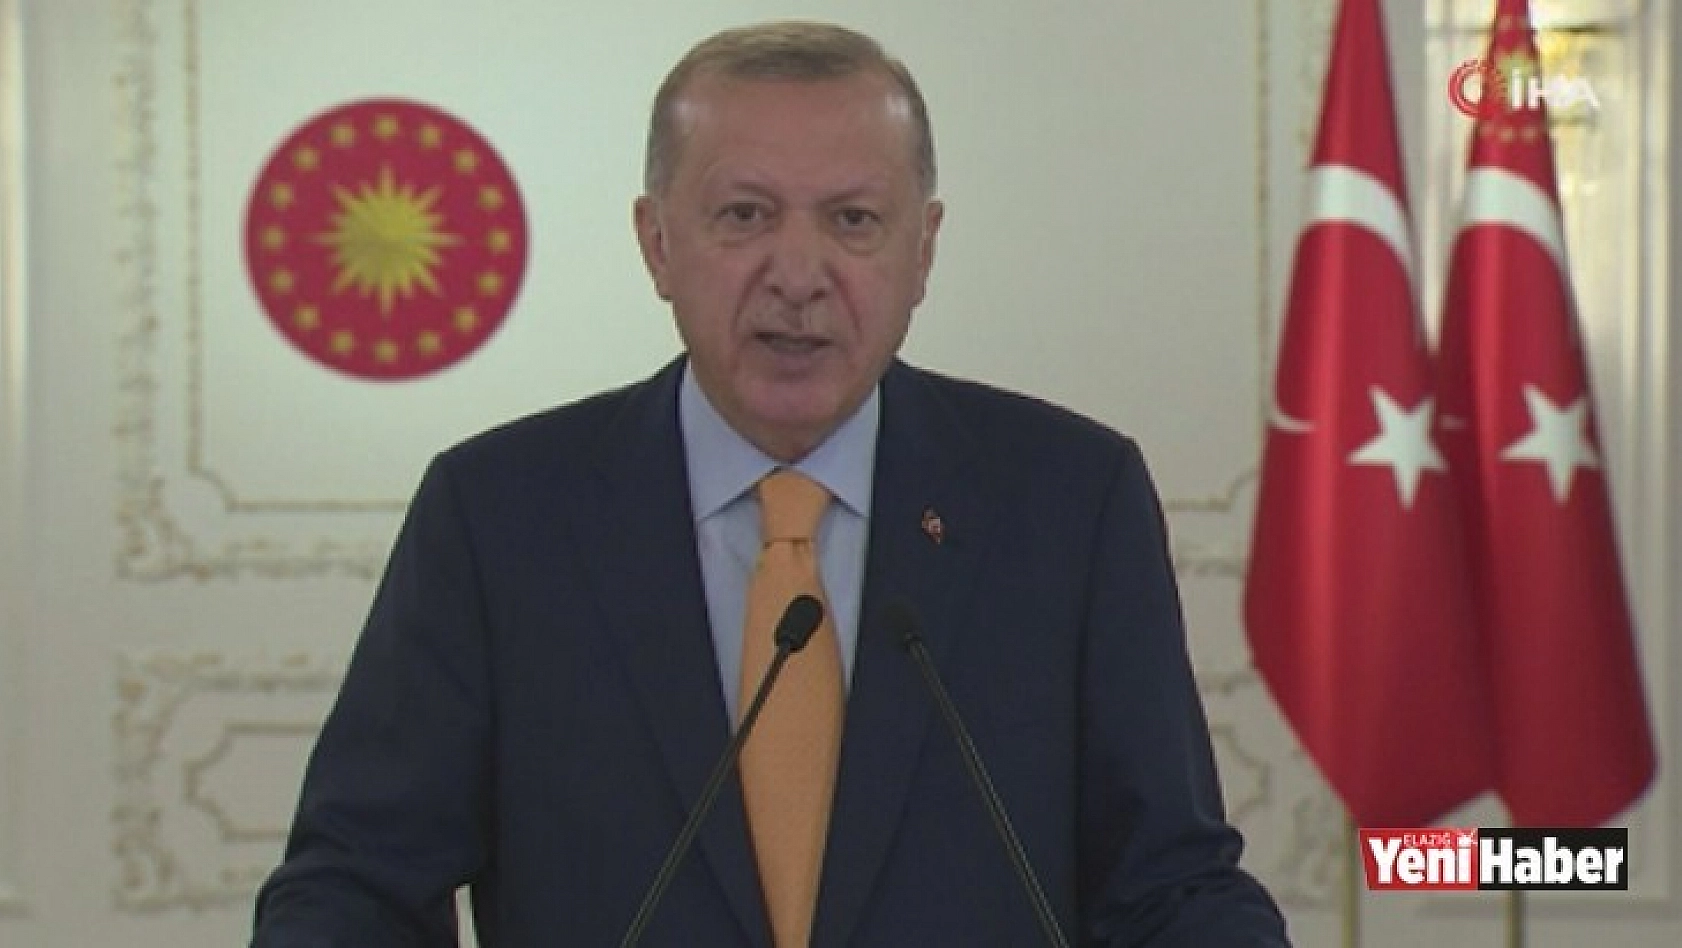 Cumhurbaşkanı Erdoğan, yeni tedbirleri açıkladı